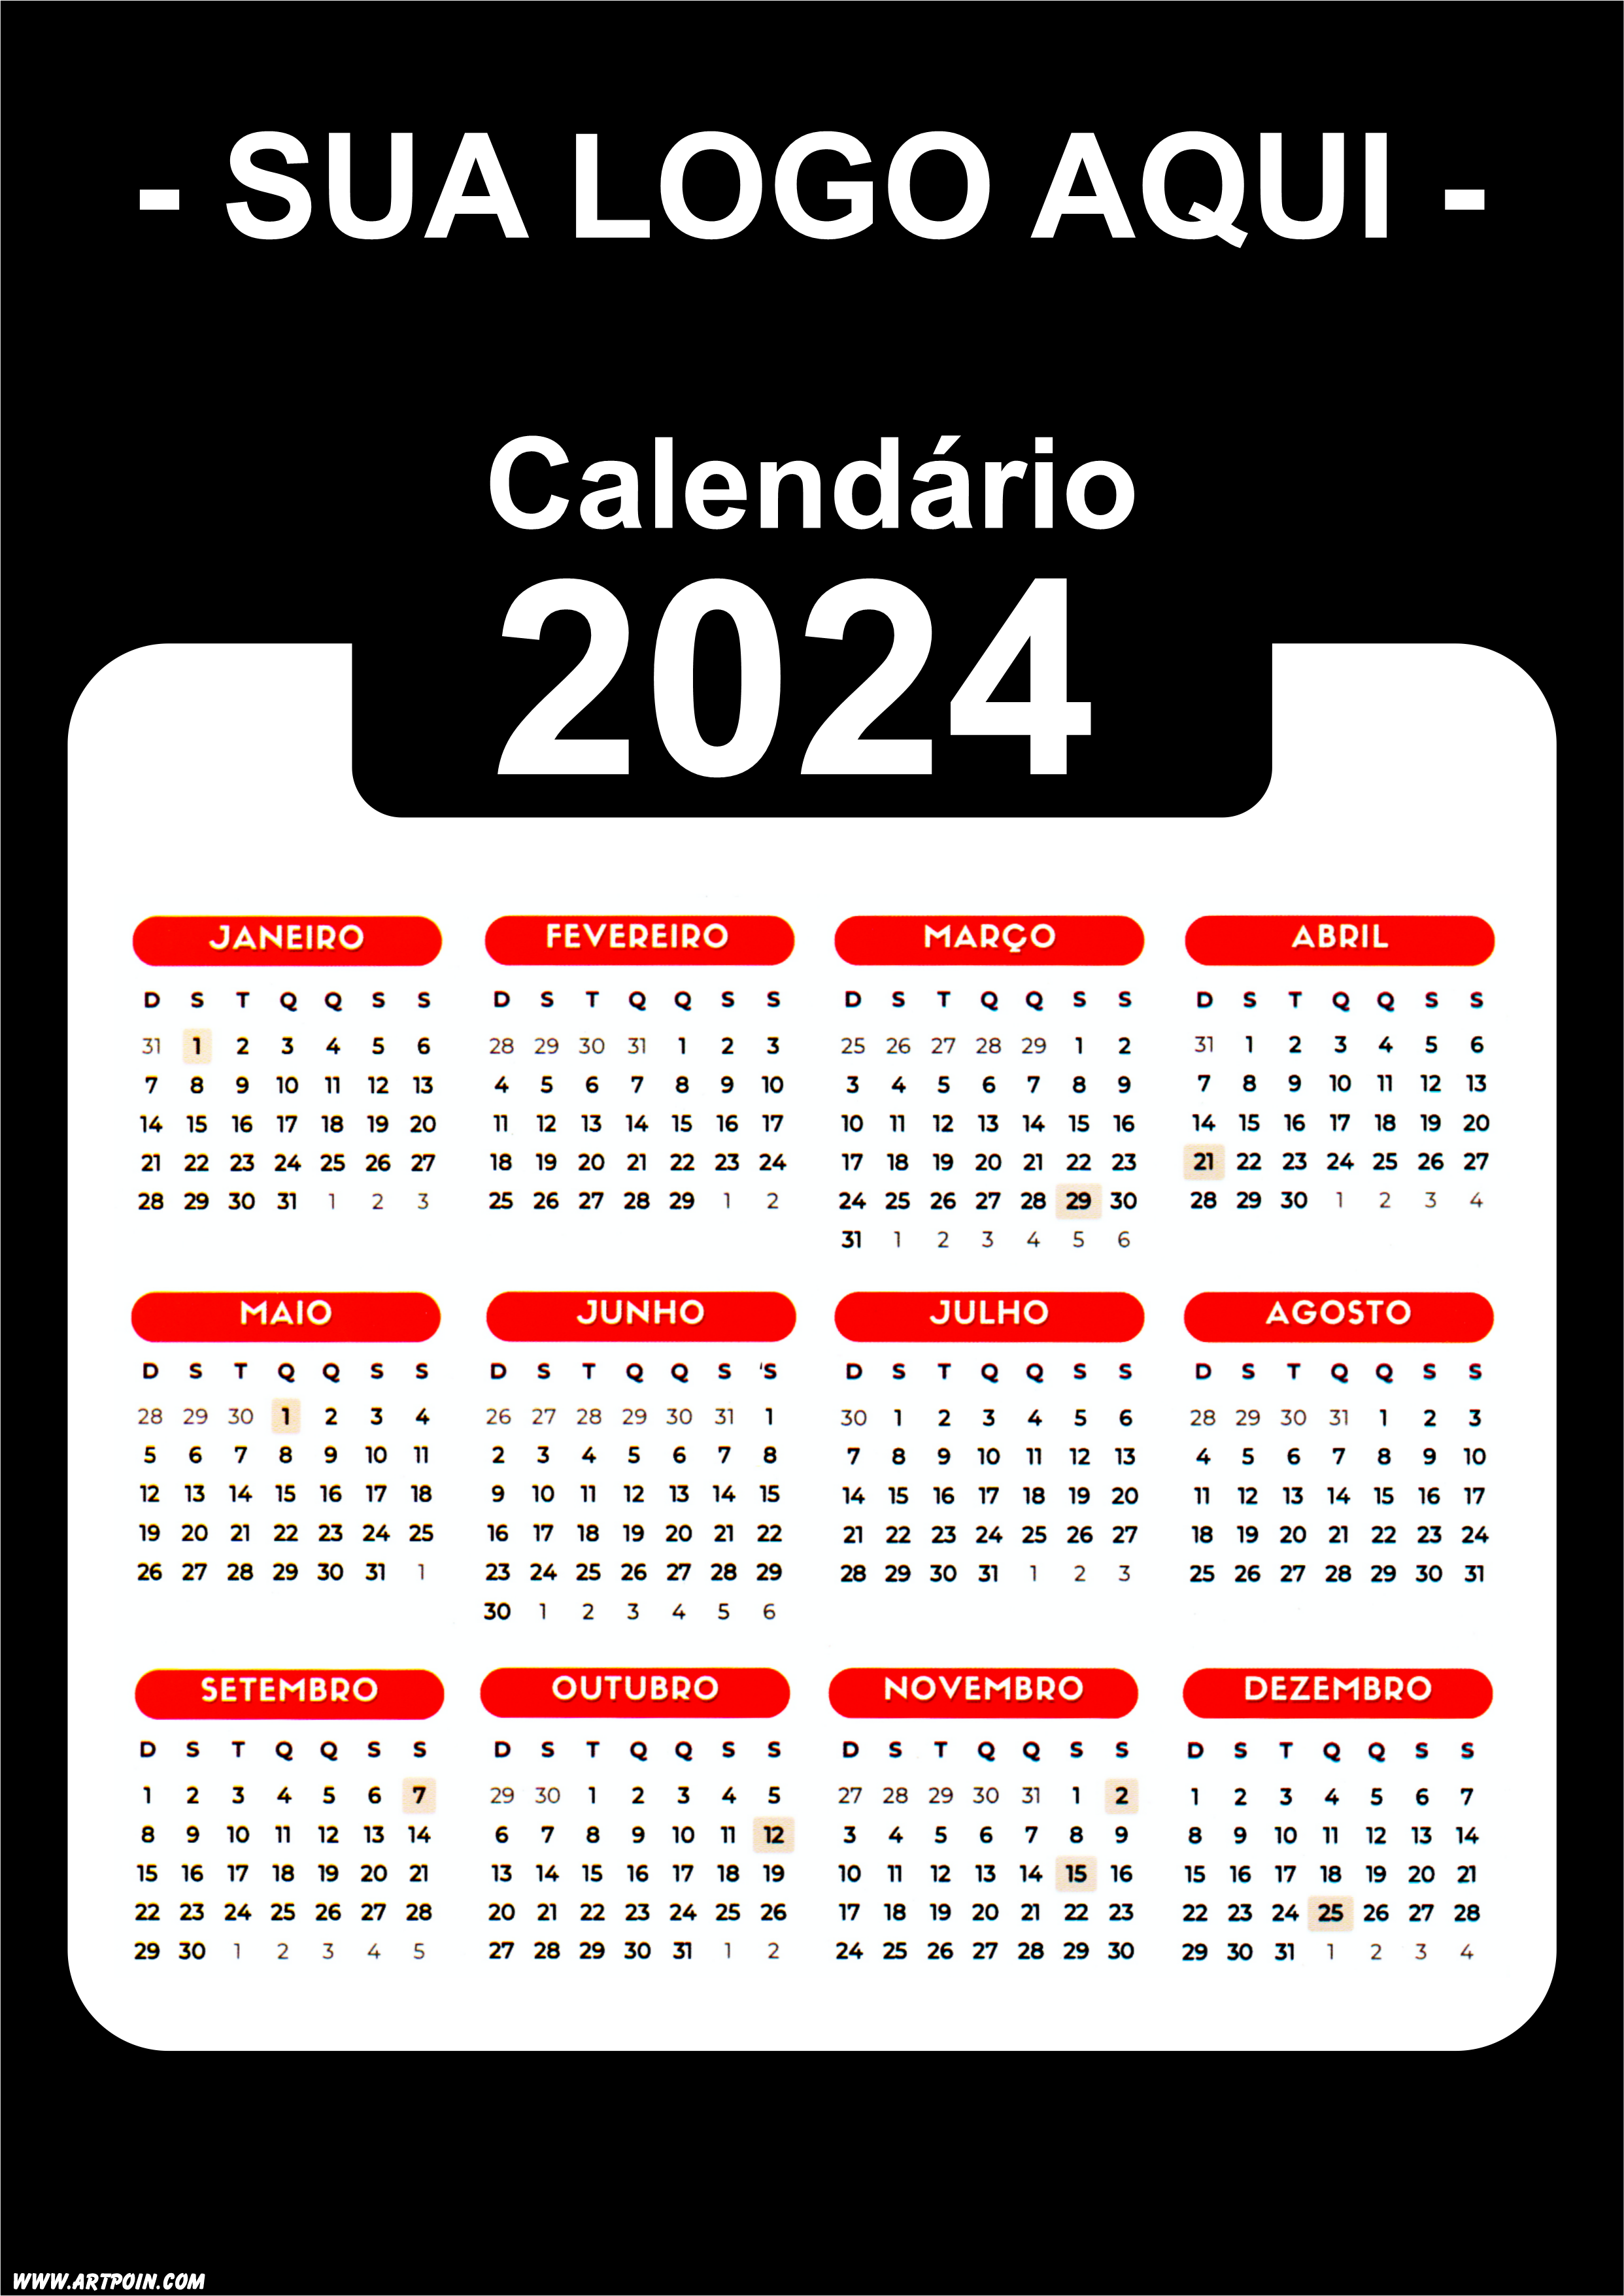 Calendário 2024 modelo preto para personalização com a logo da sua loja png